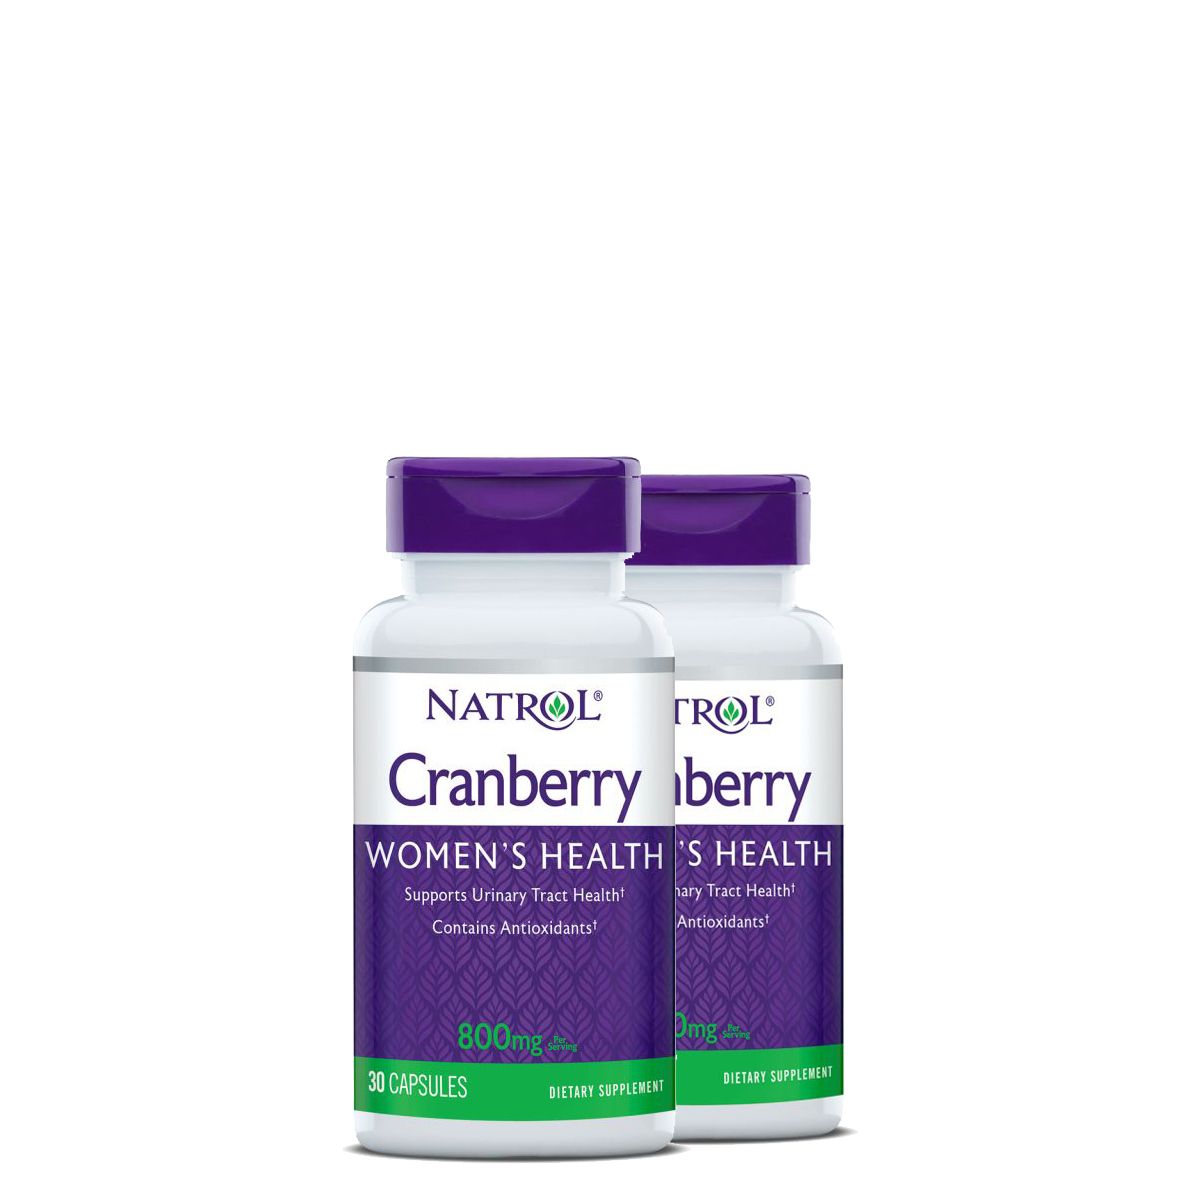 Vörösáfonya 800 mg, Natrol Cranberry, 2x30 kapszula